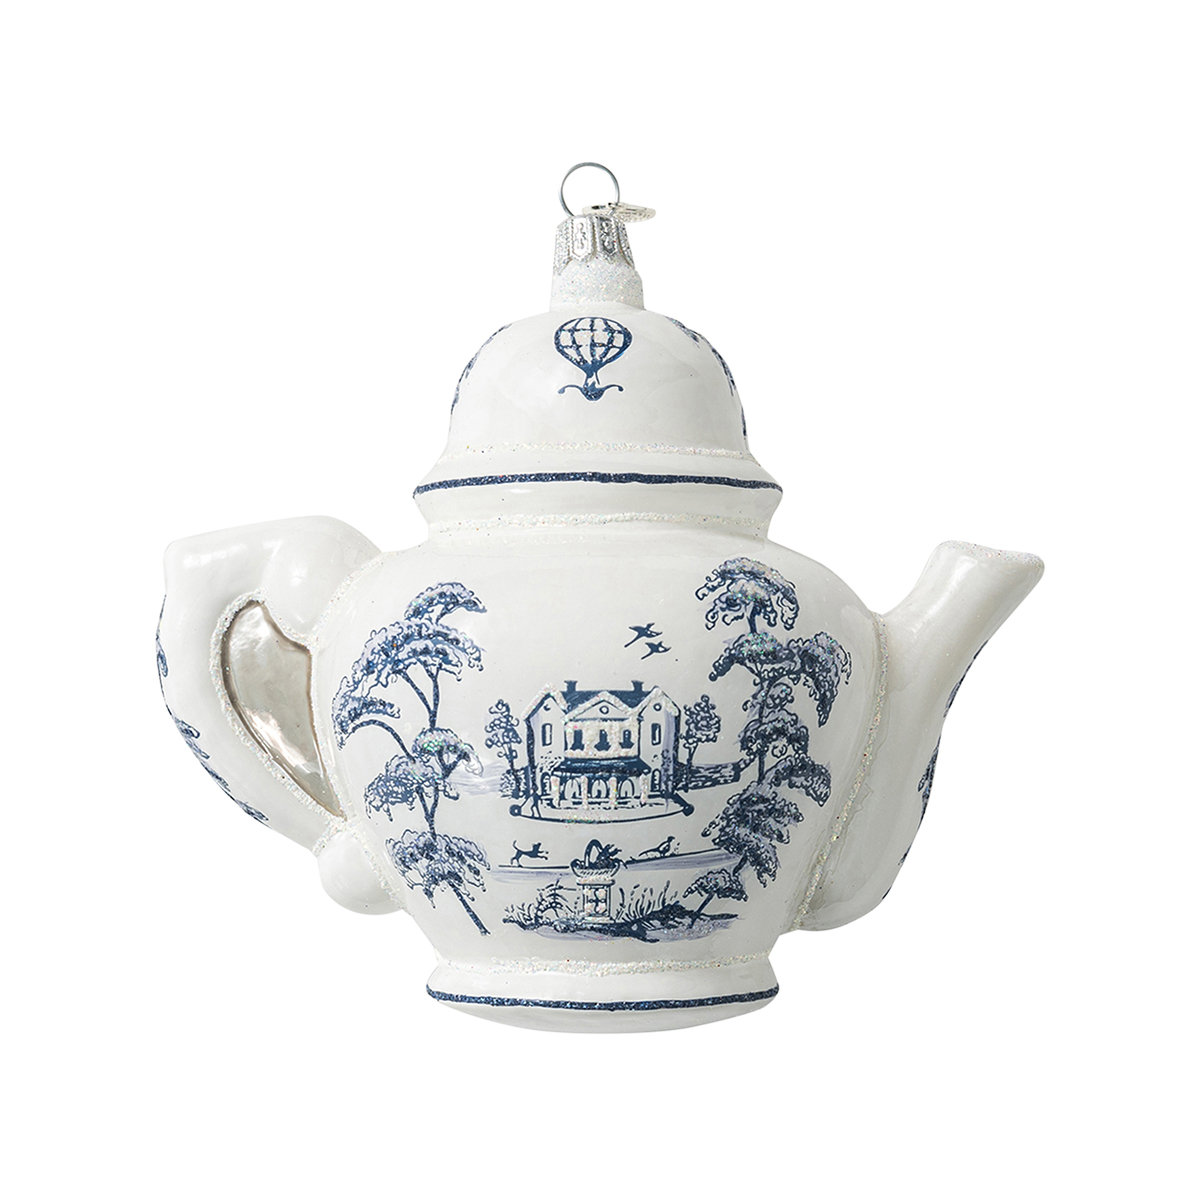 Teapot Table Lamp - Delft Blue Floral Tea Pot Accent Light, Plug-In 